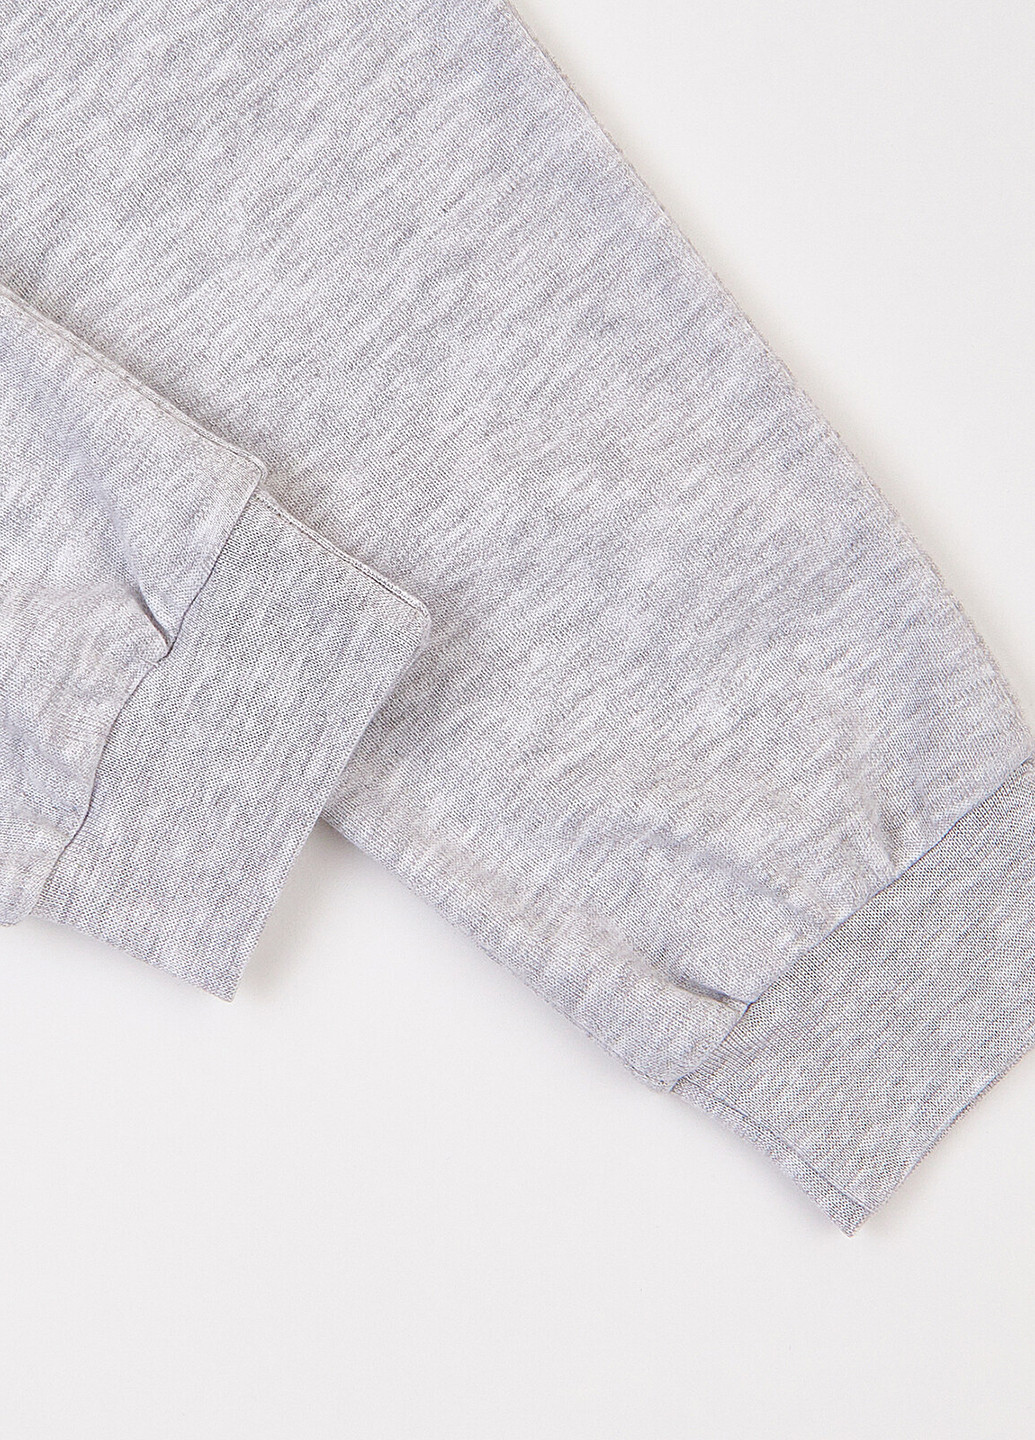 Сіра всесезон піжама (світшот, штани) свитшот + брюки Ляля